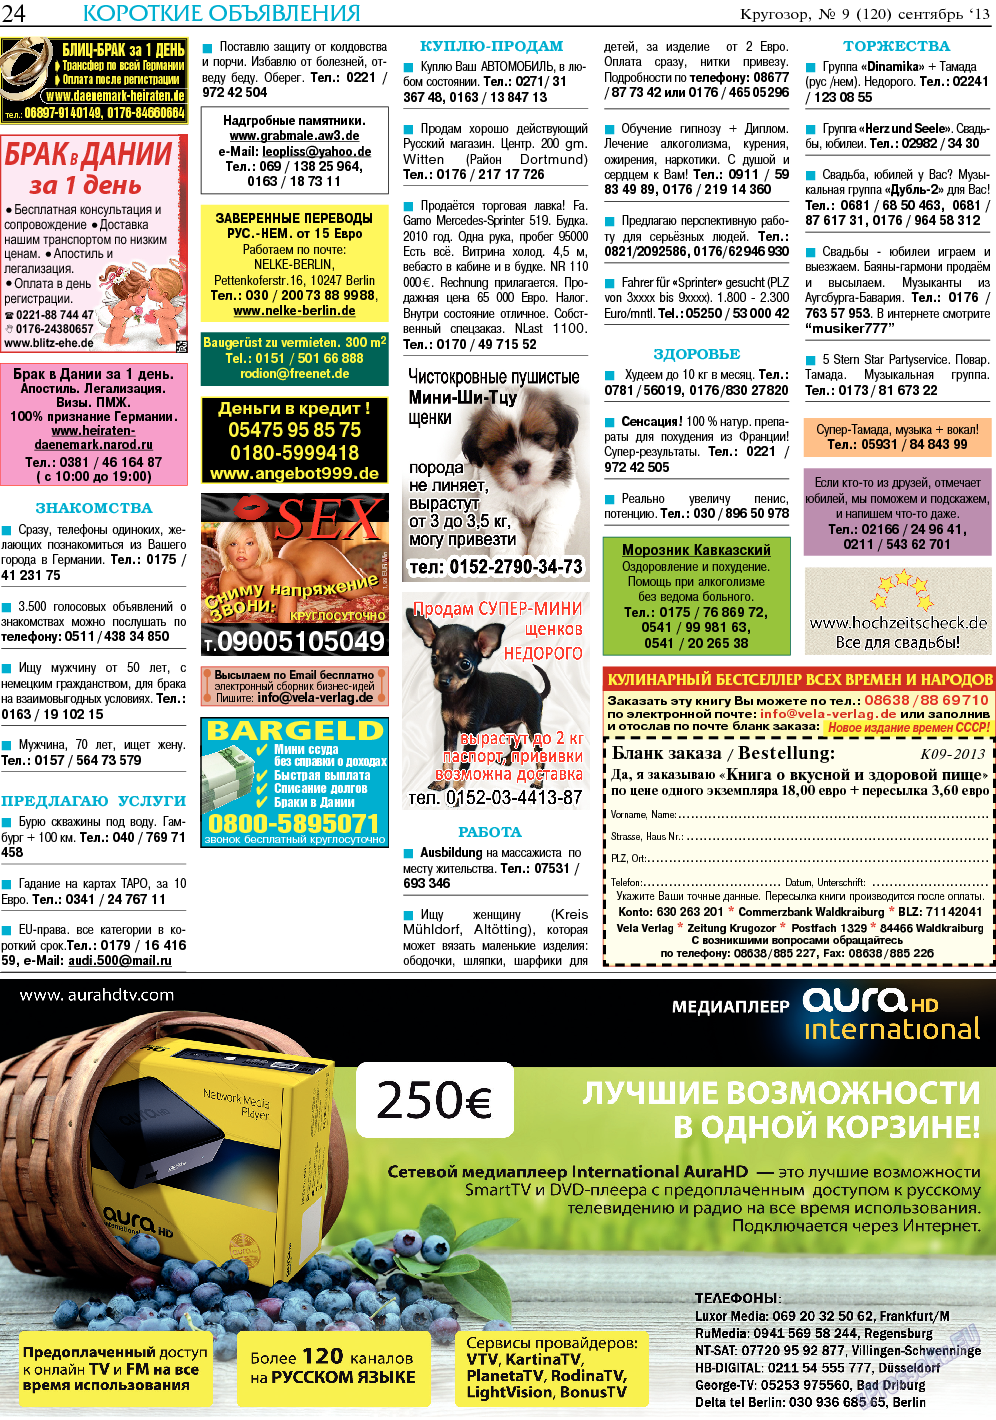 Кругозор, газета. 2013 №9 стр.24